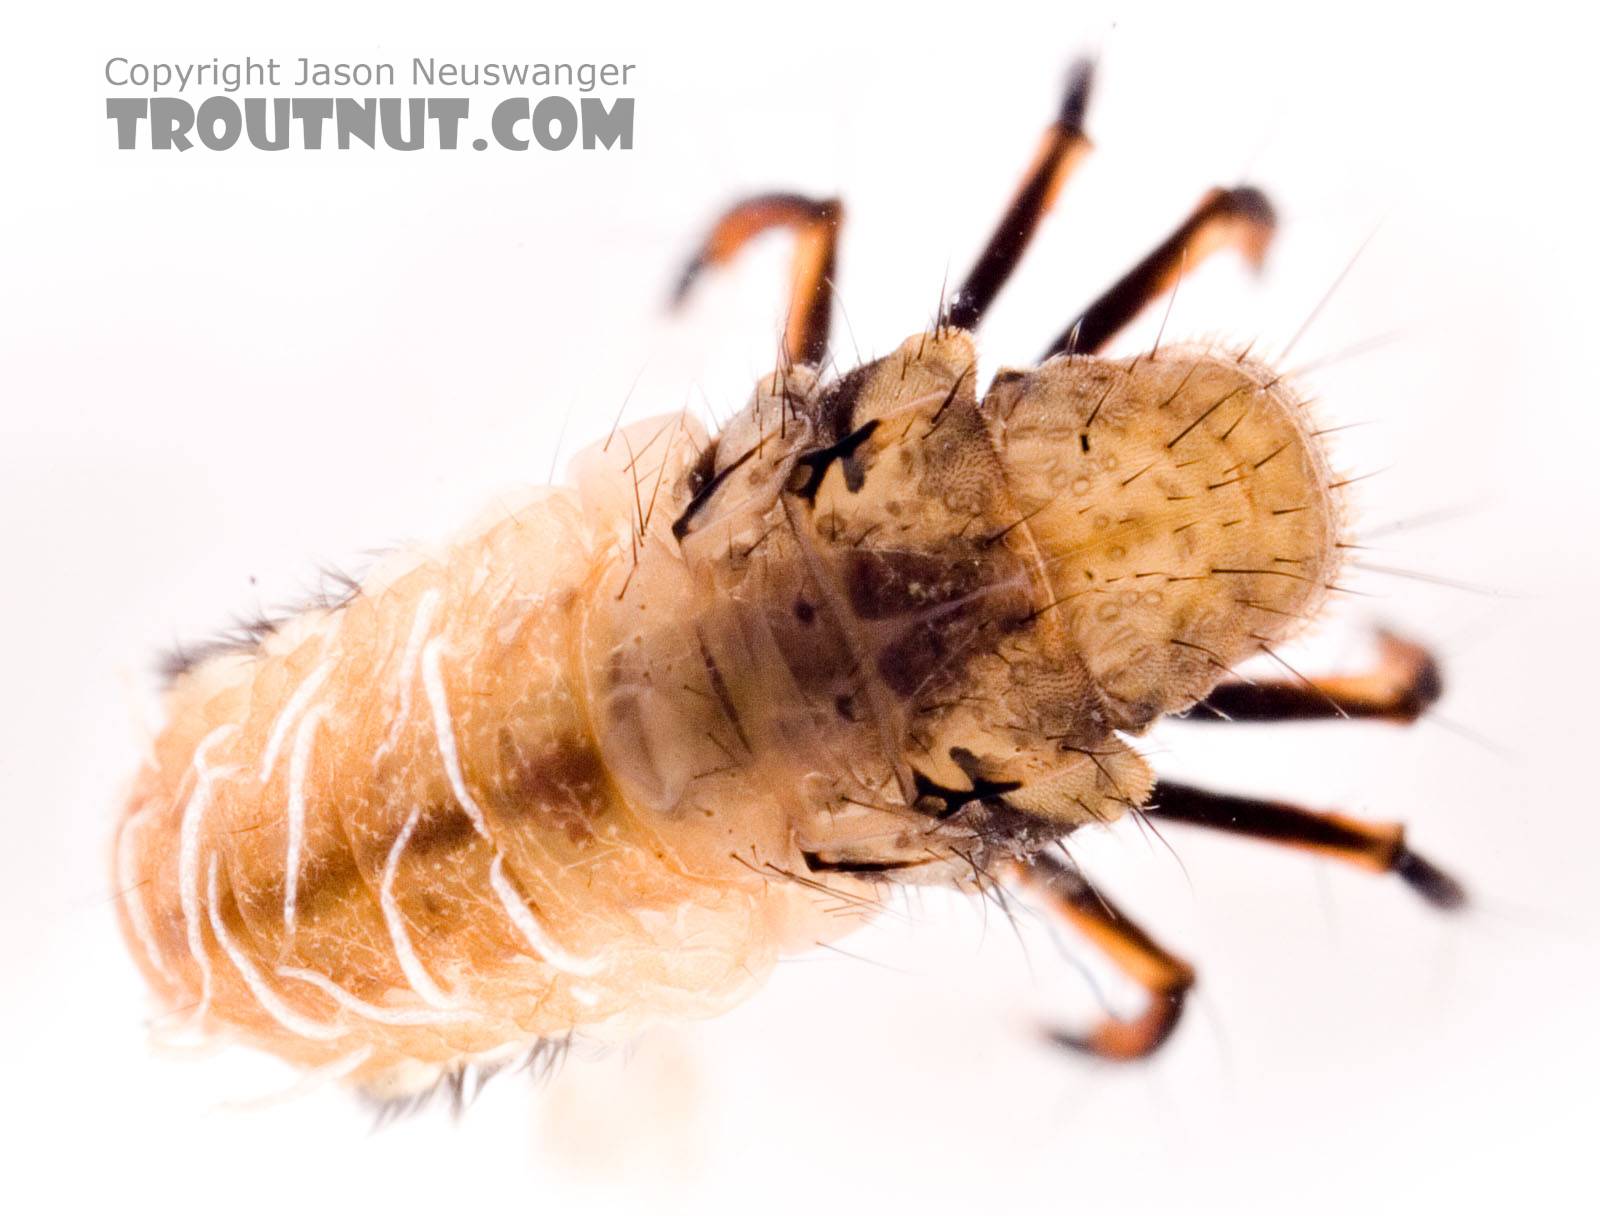 Neophylax (Autumn Mottled Sedges) Caddisfly Larva from the Neversink River (above reservoir) in New York